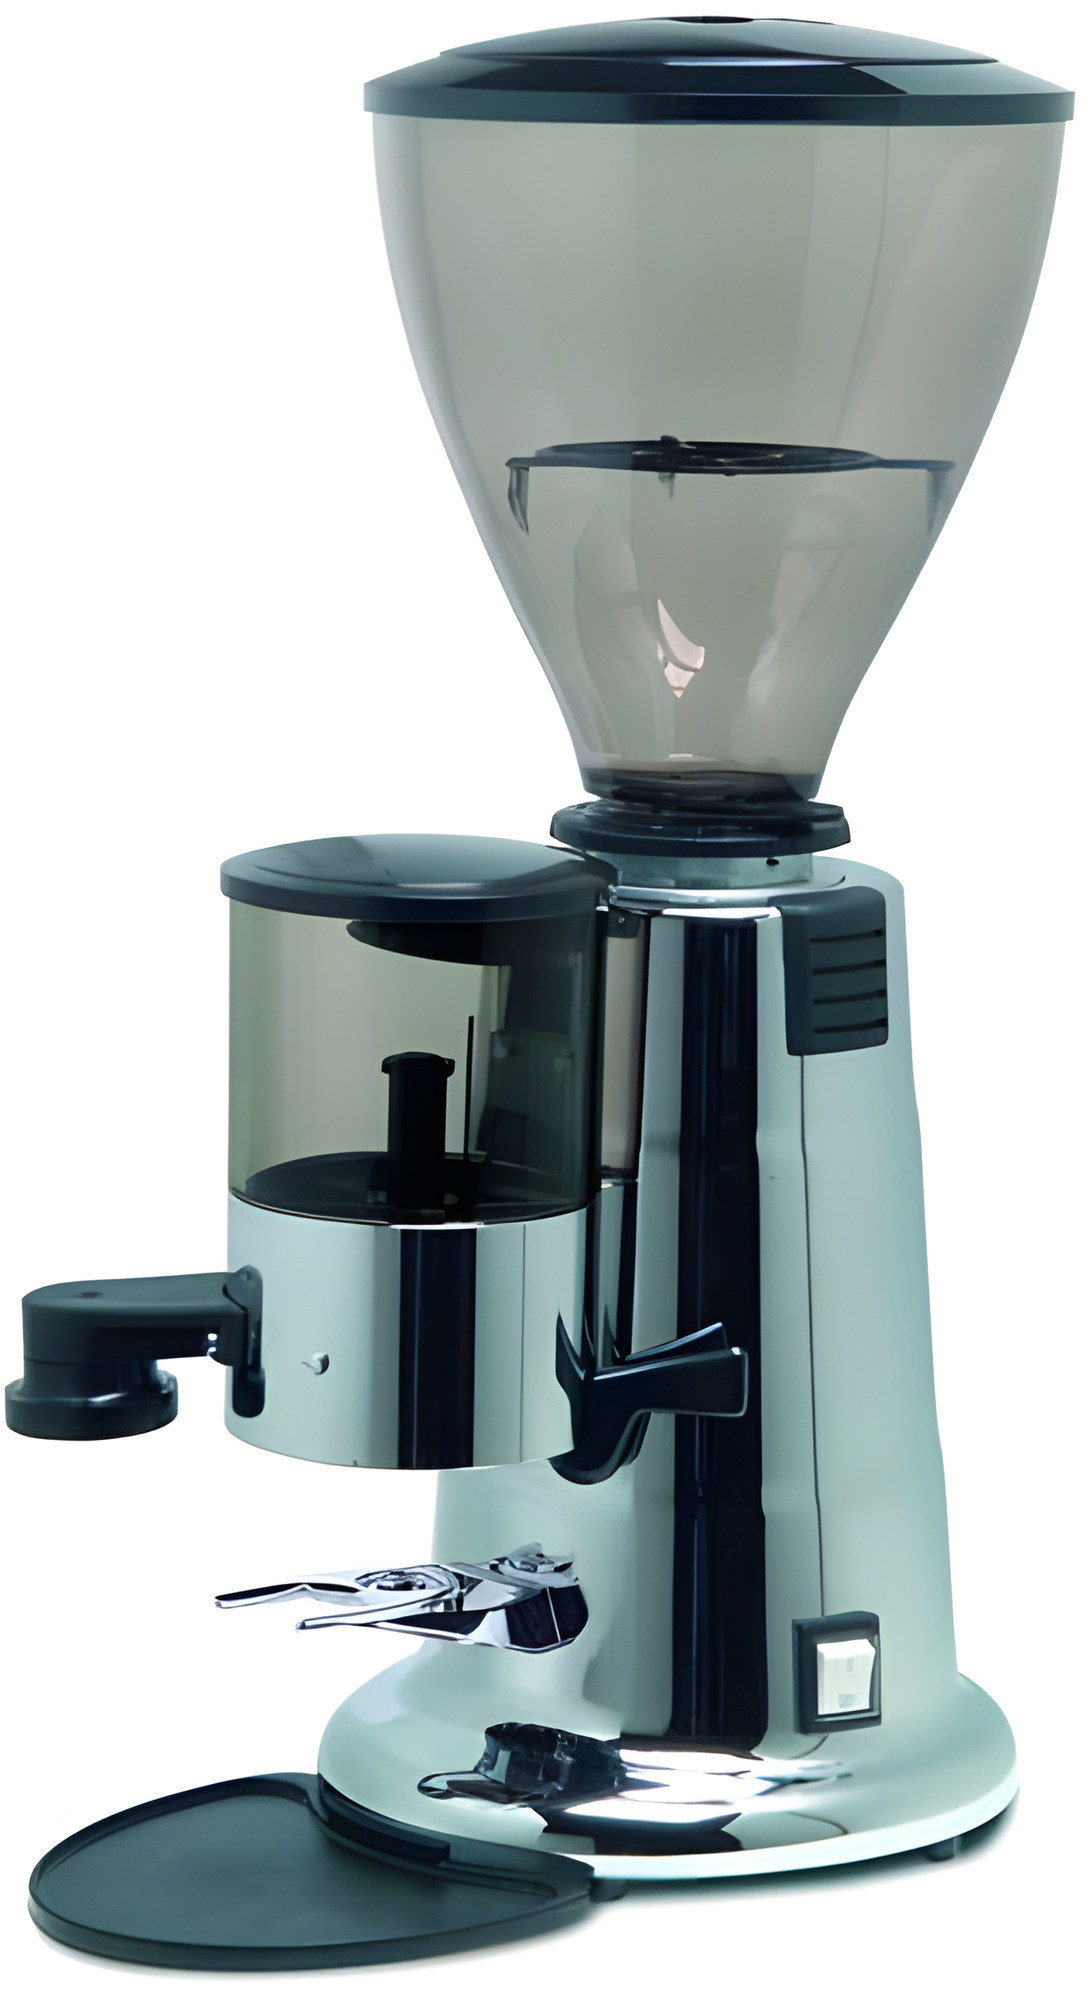 Кофемолка MACAP MXP черная. 0.34 кВт счетчик порций до 8 кг/час